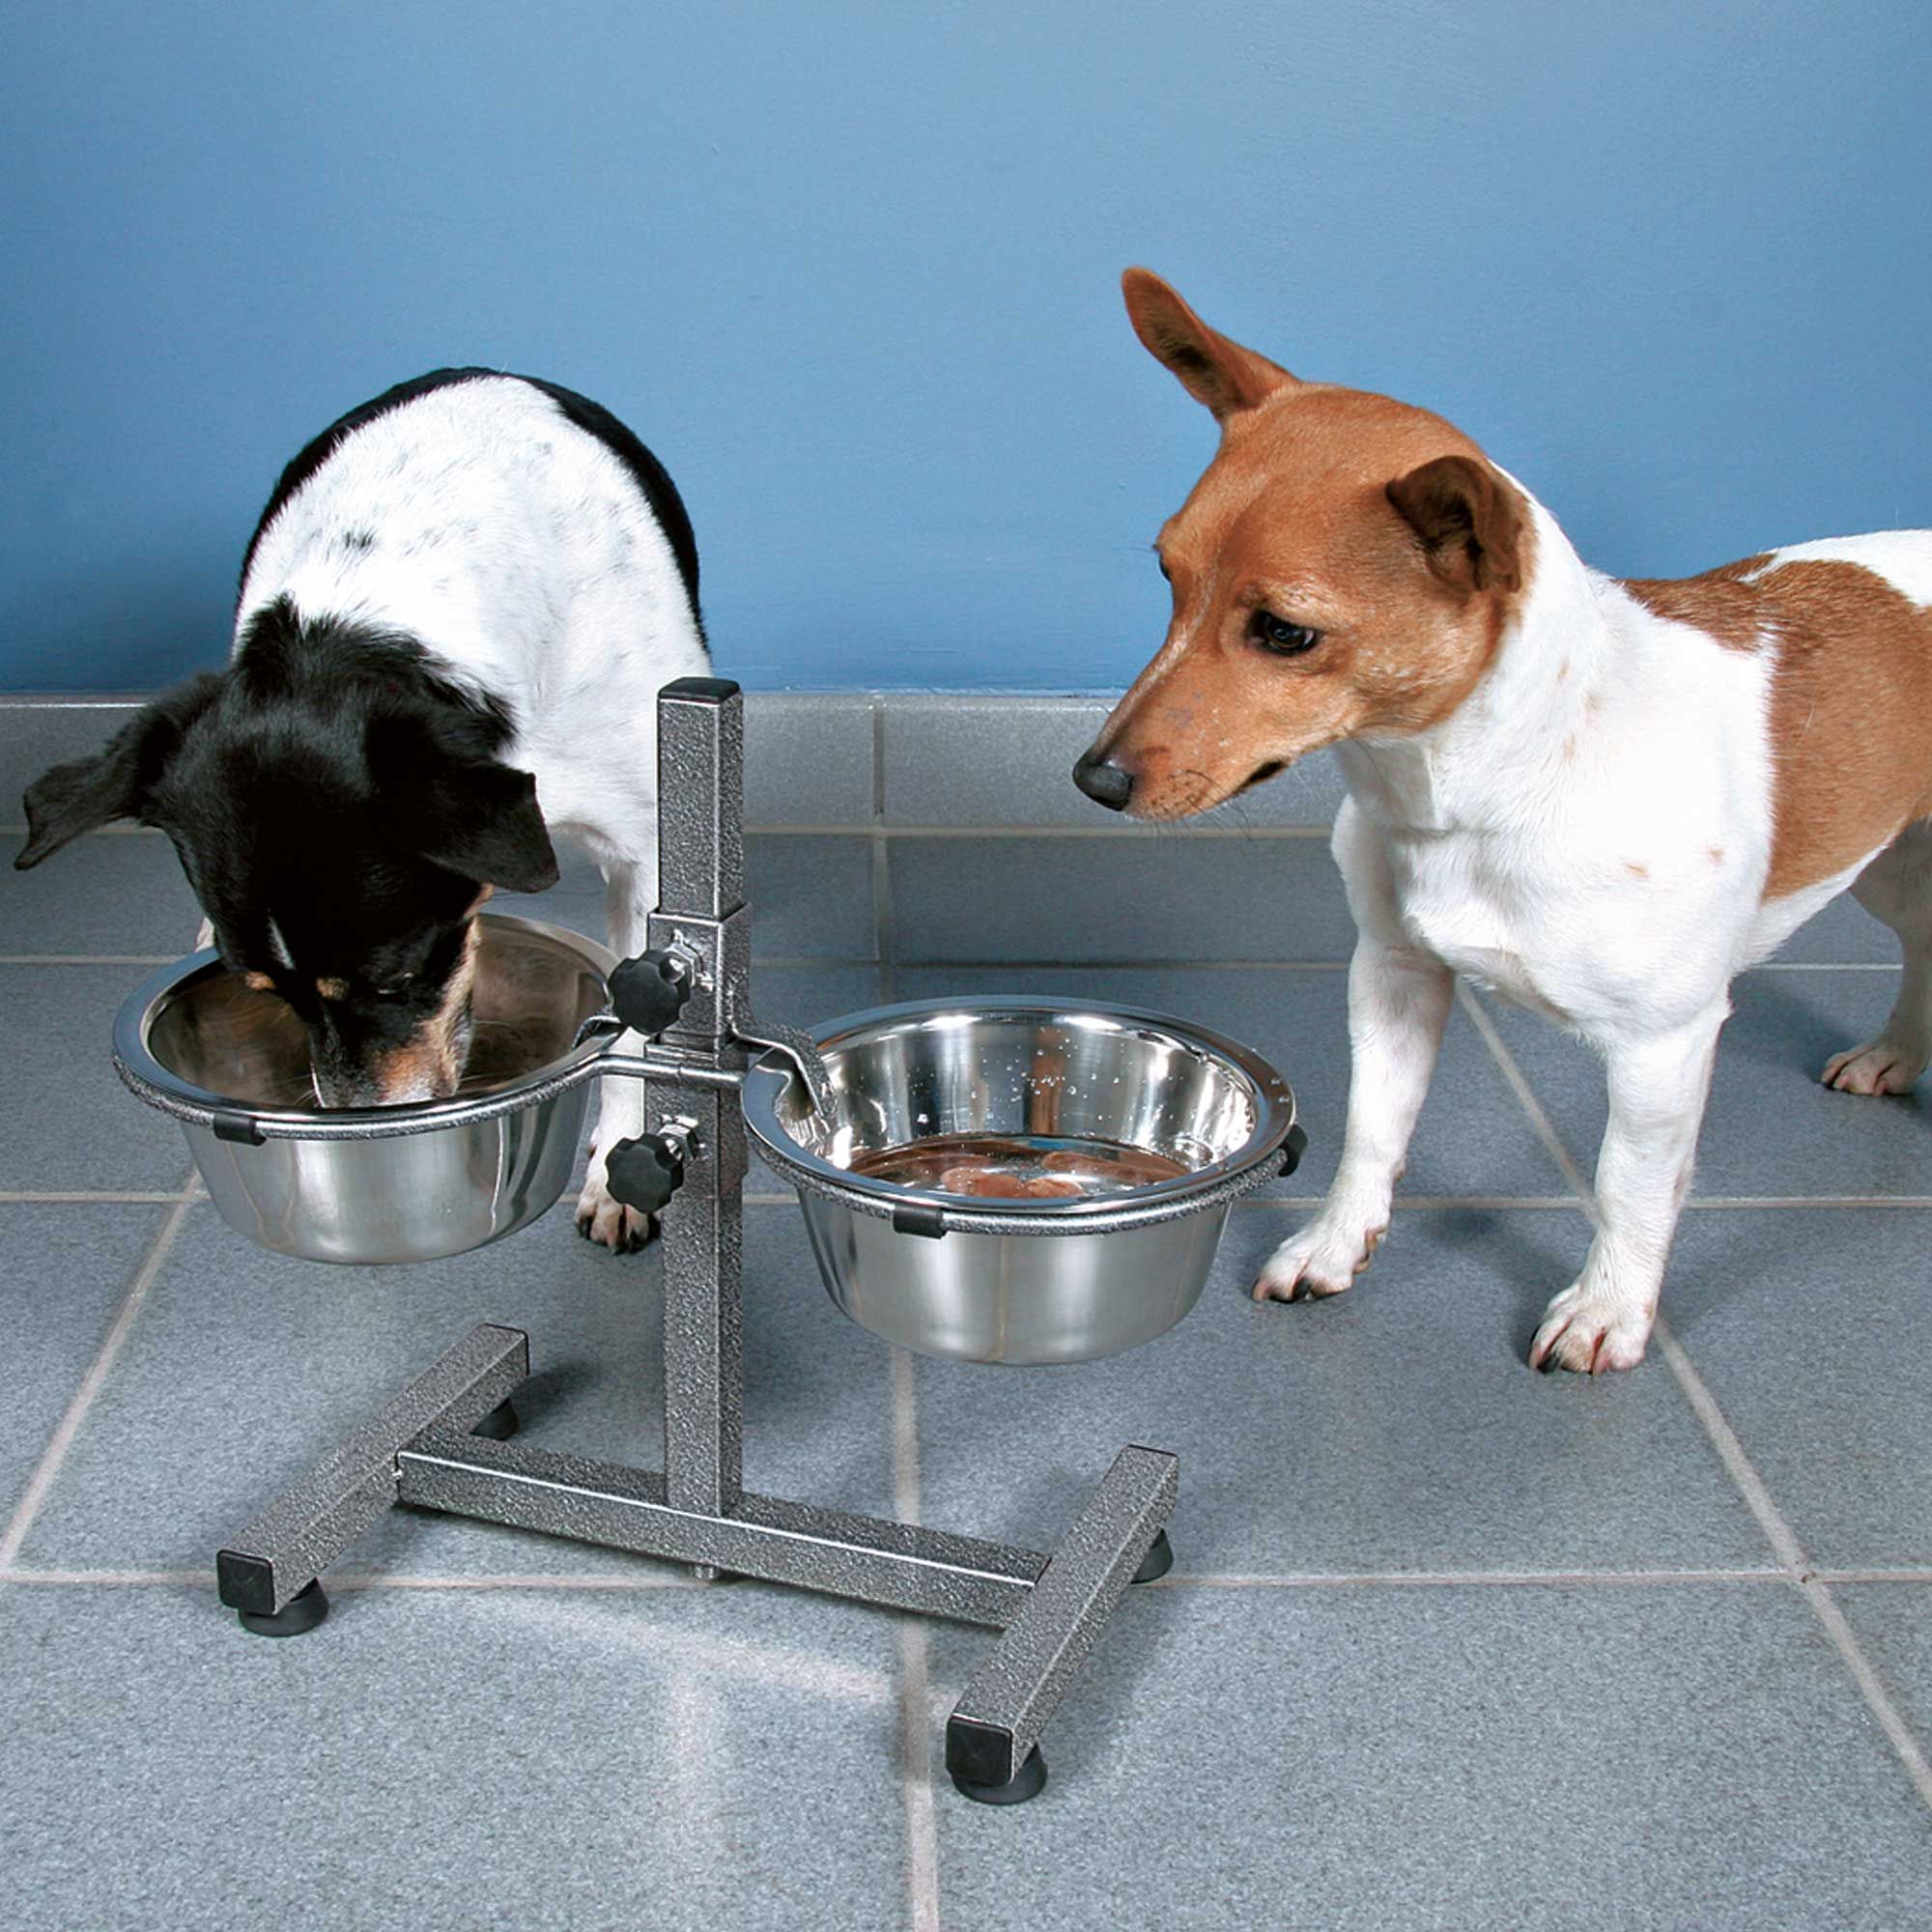 Höhenverstellbares Futterset - ideal für Hunde, die gerne erhöht fressen und trinken